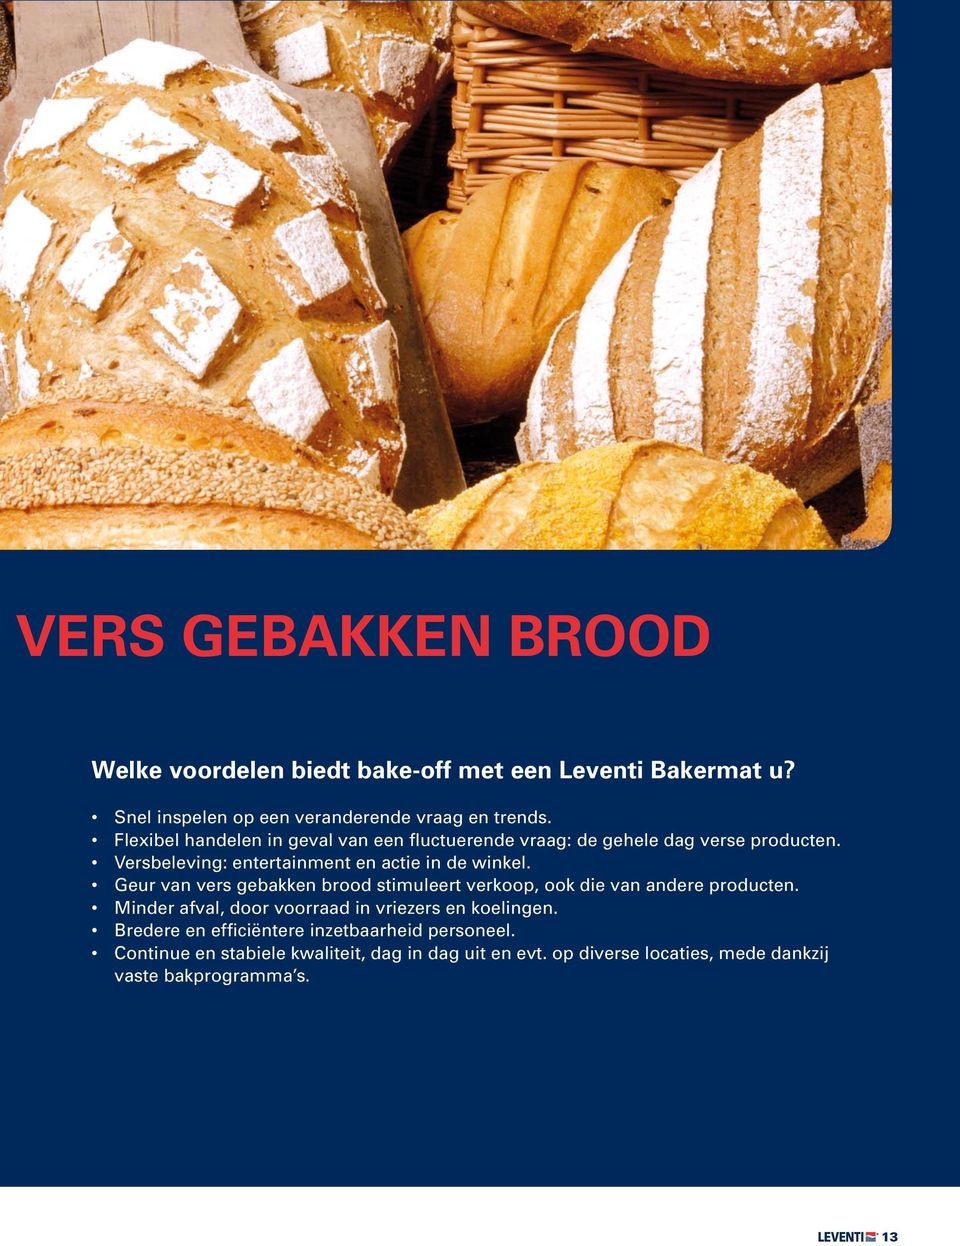 Geur van vers gebakken brood stimuleert verkoop, ook die van andere producten. Minder afval, door voorraad in vriezers en koelingen.